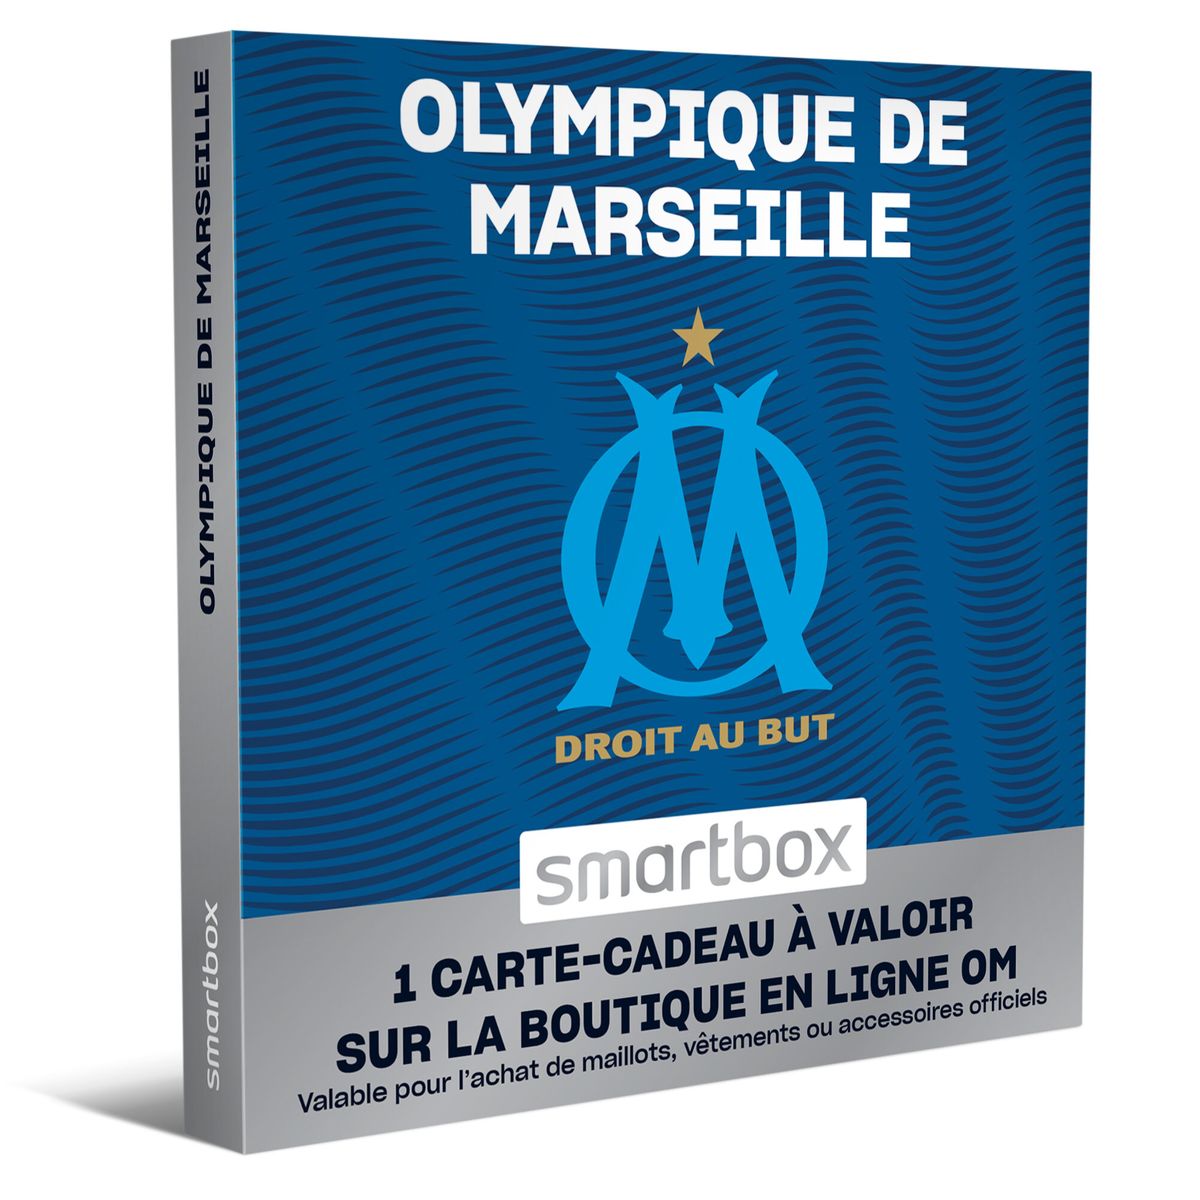 Olympique de marseille - smartbox - coffret cadeau multi-thèmes Smartbox